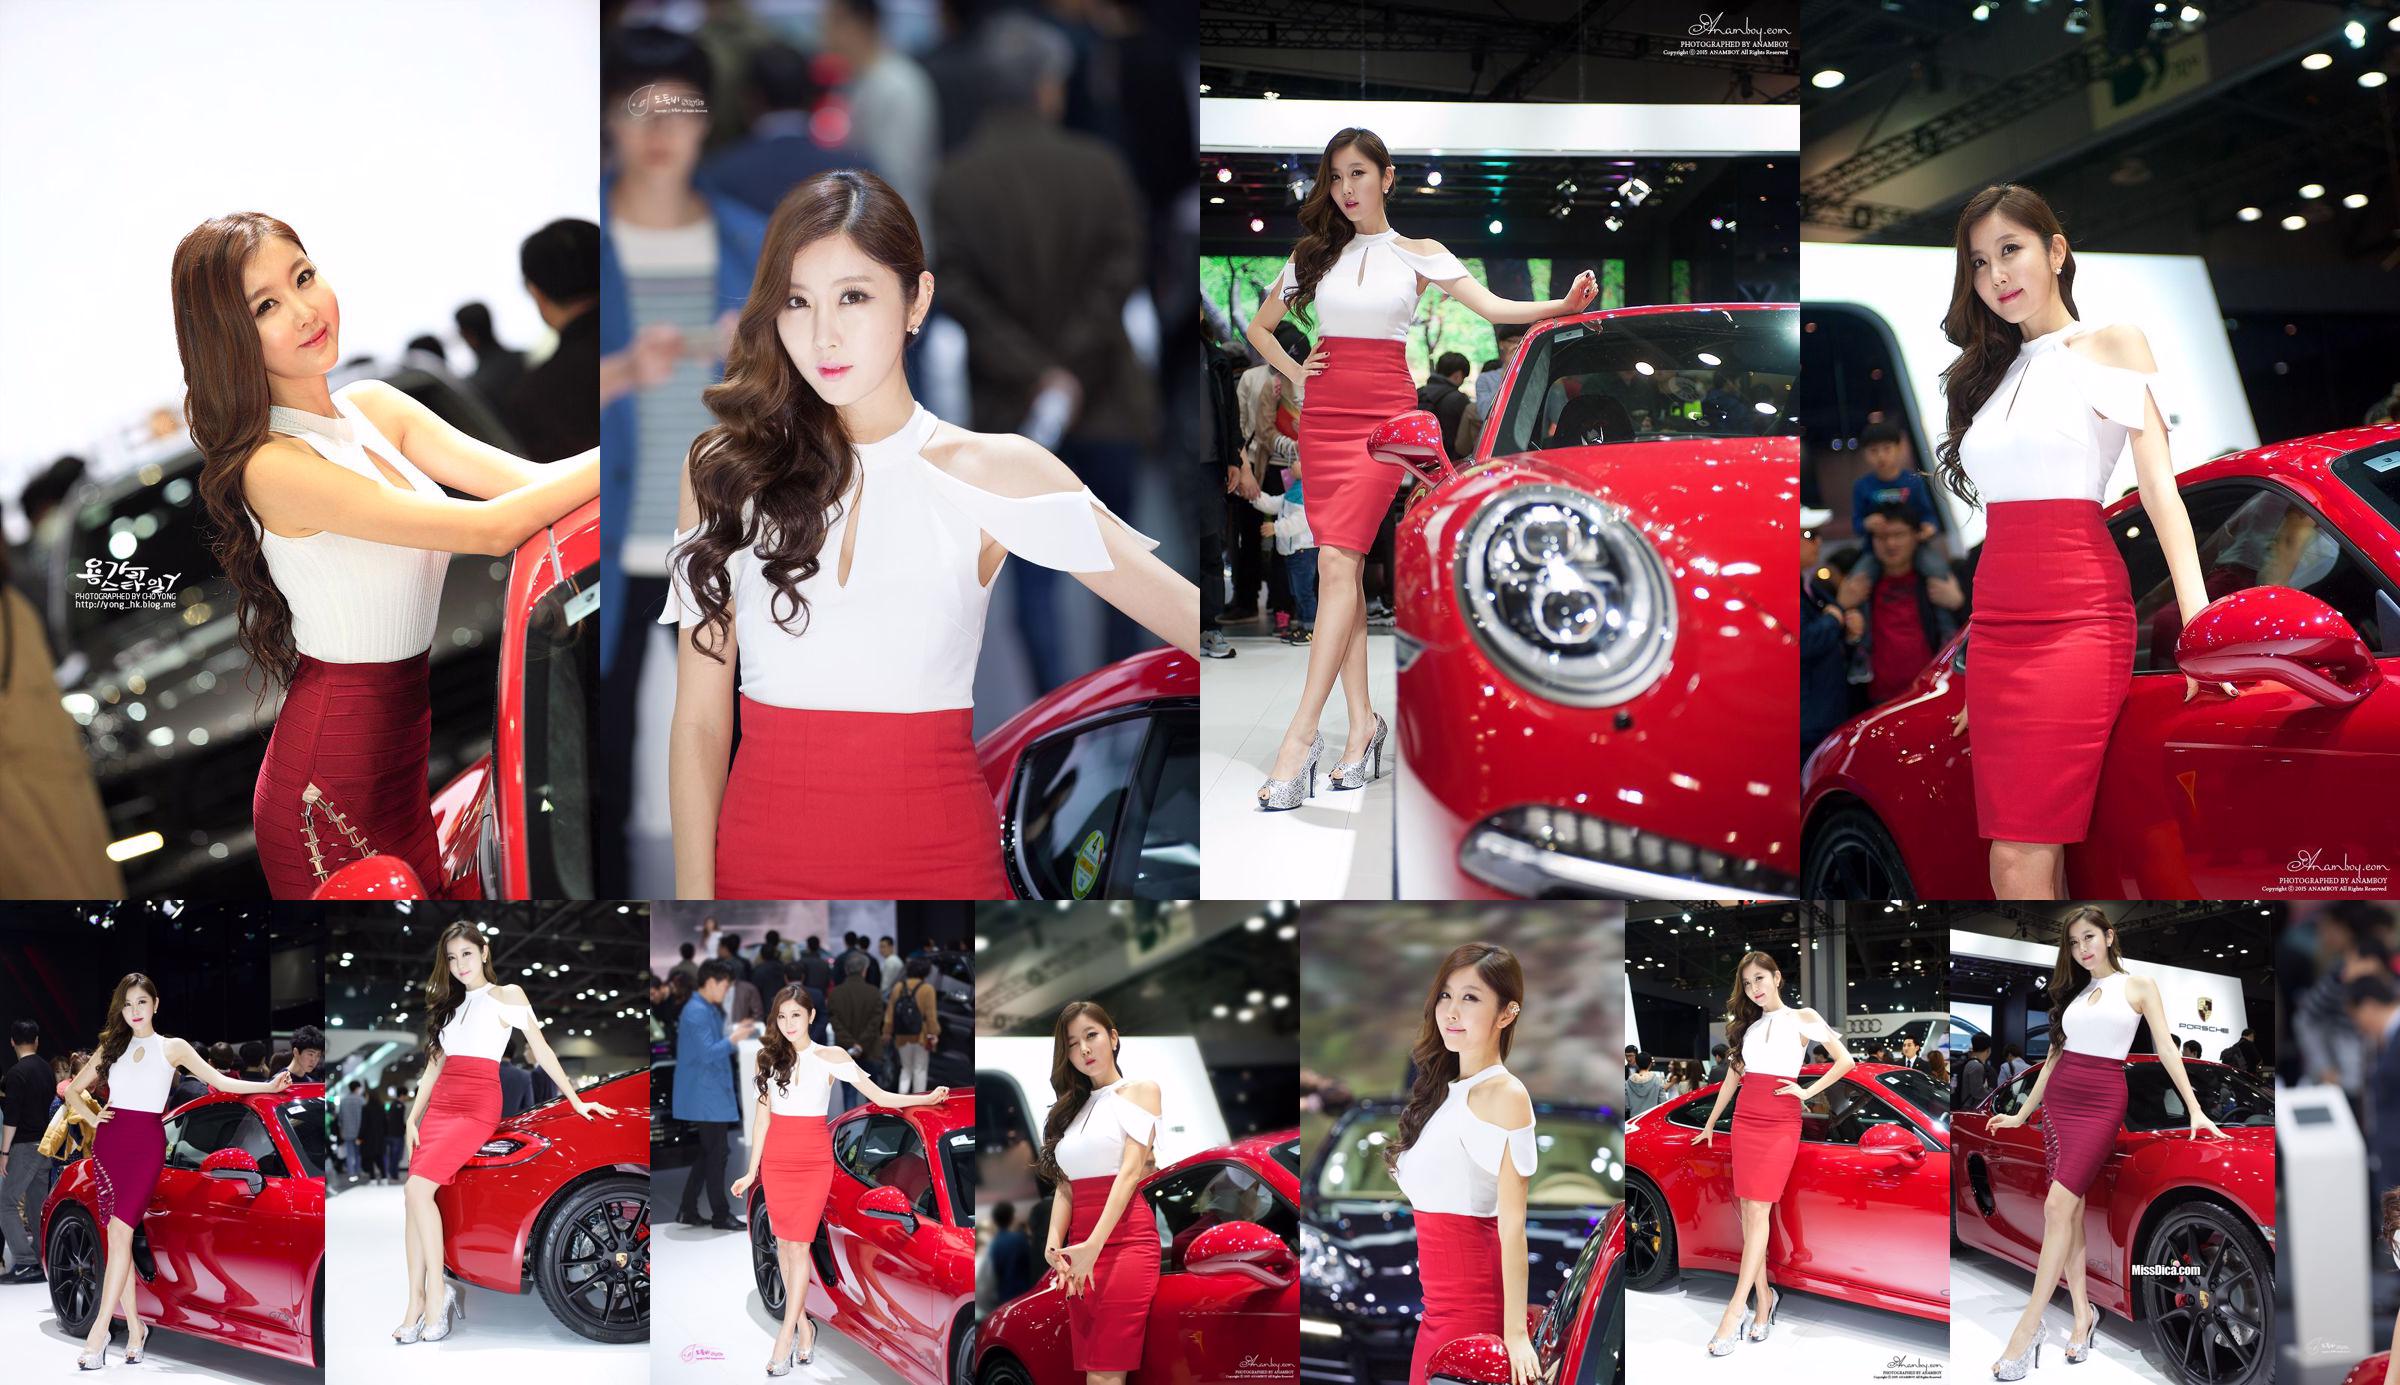 รวมภาพรถเกาหลีรุ่น Cui Xingya / "Red Skirt Series ของ Cui Xinger ที่งานออโต้โชว์" No.71da8b หน้า 7